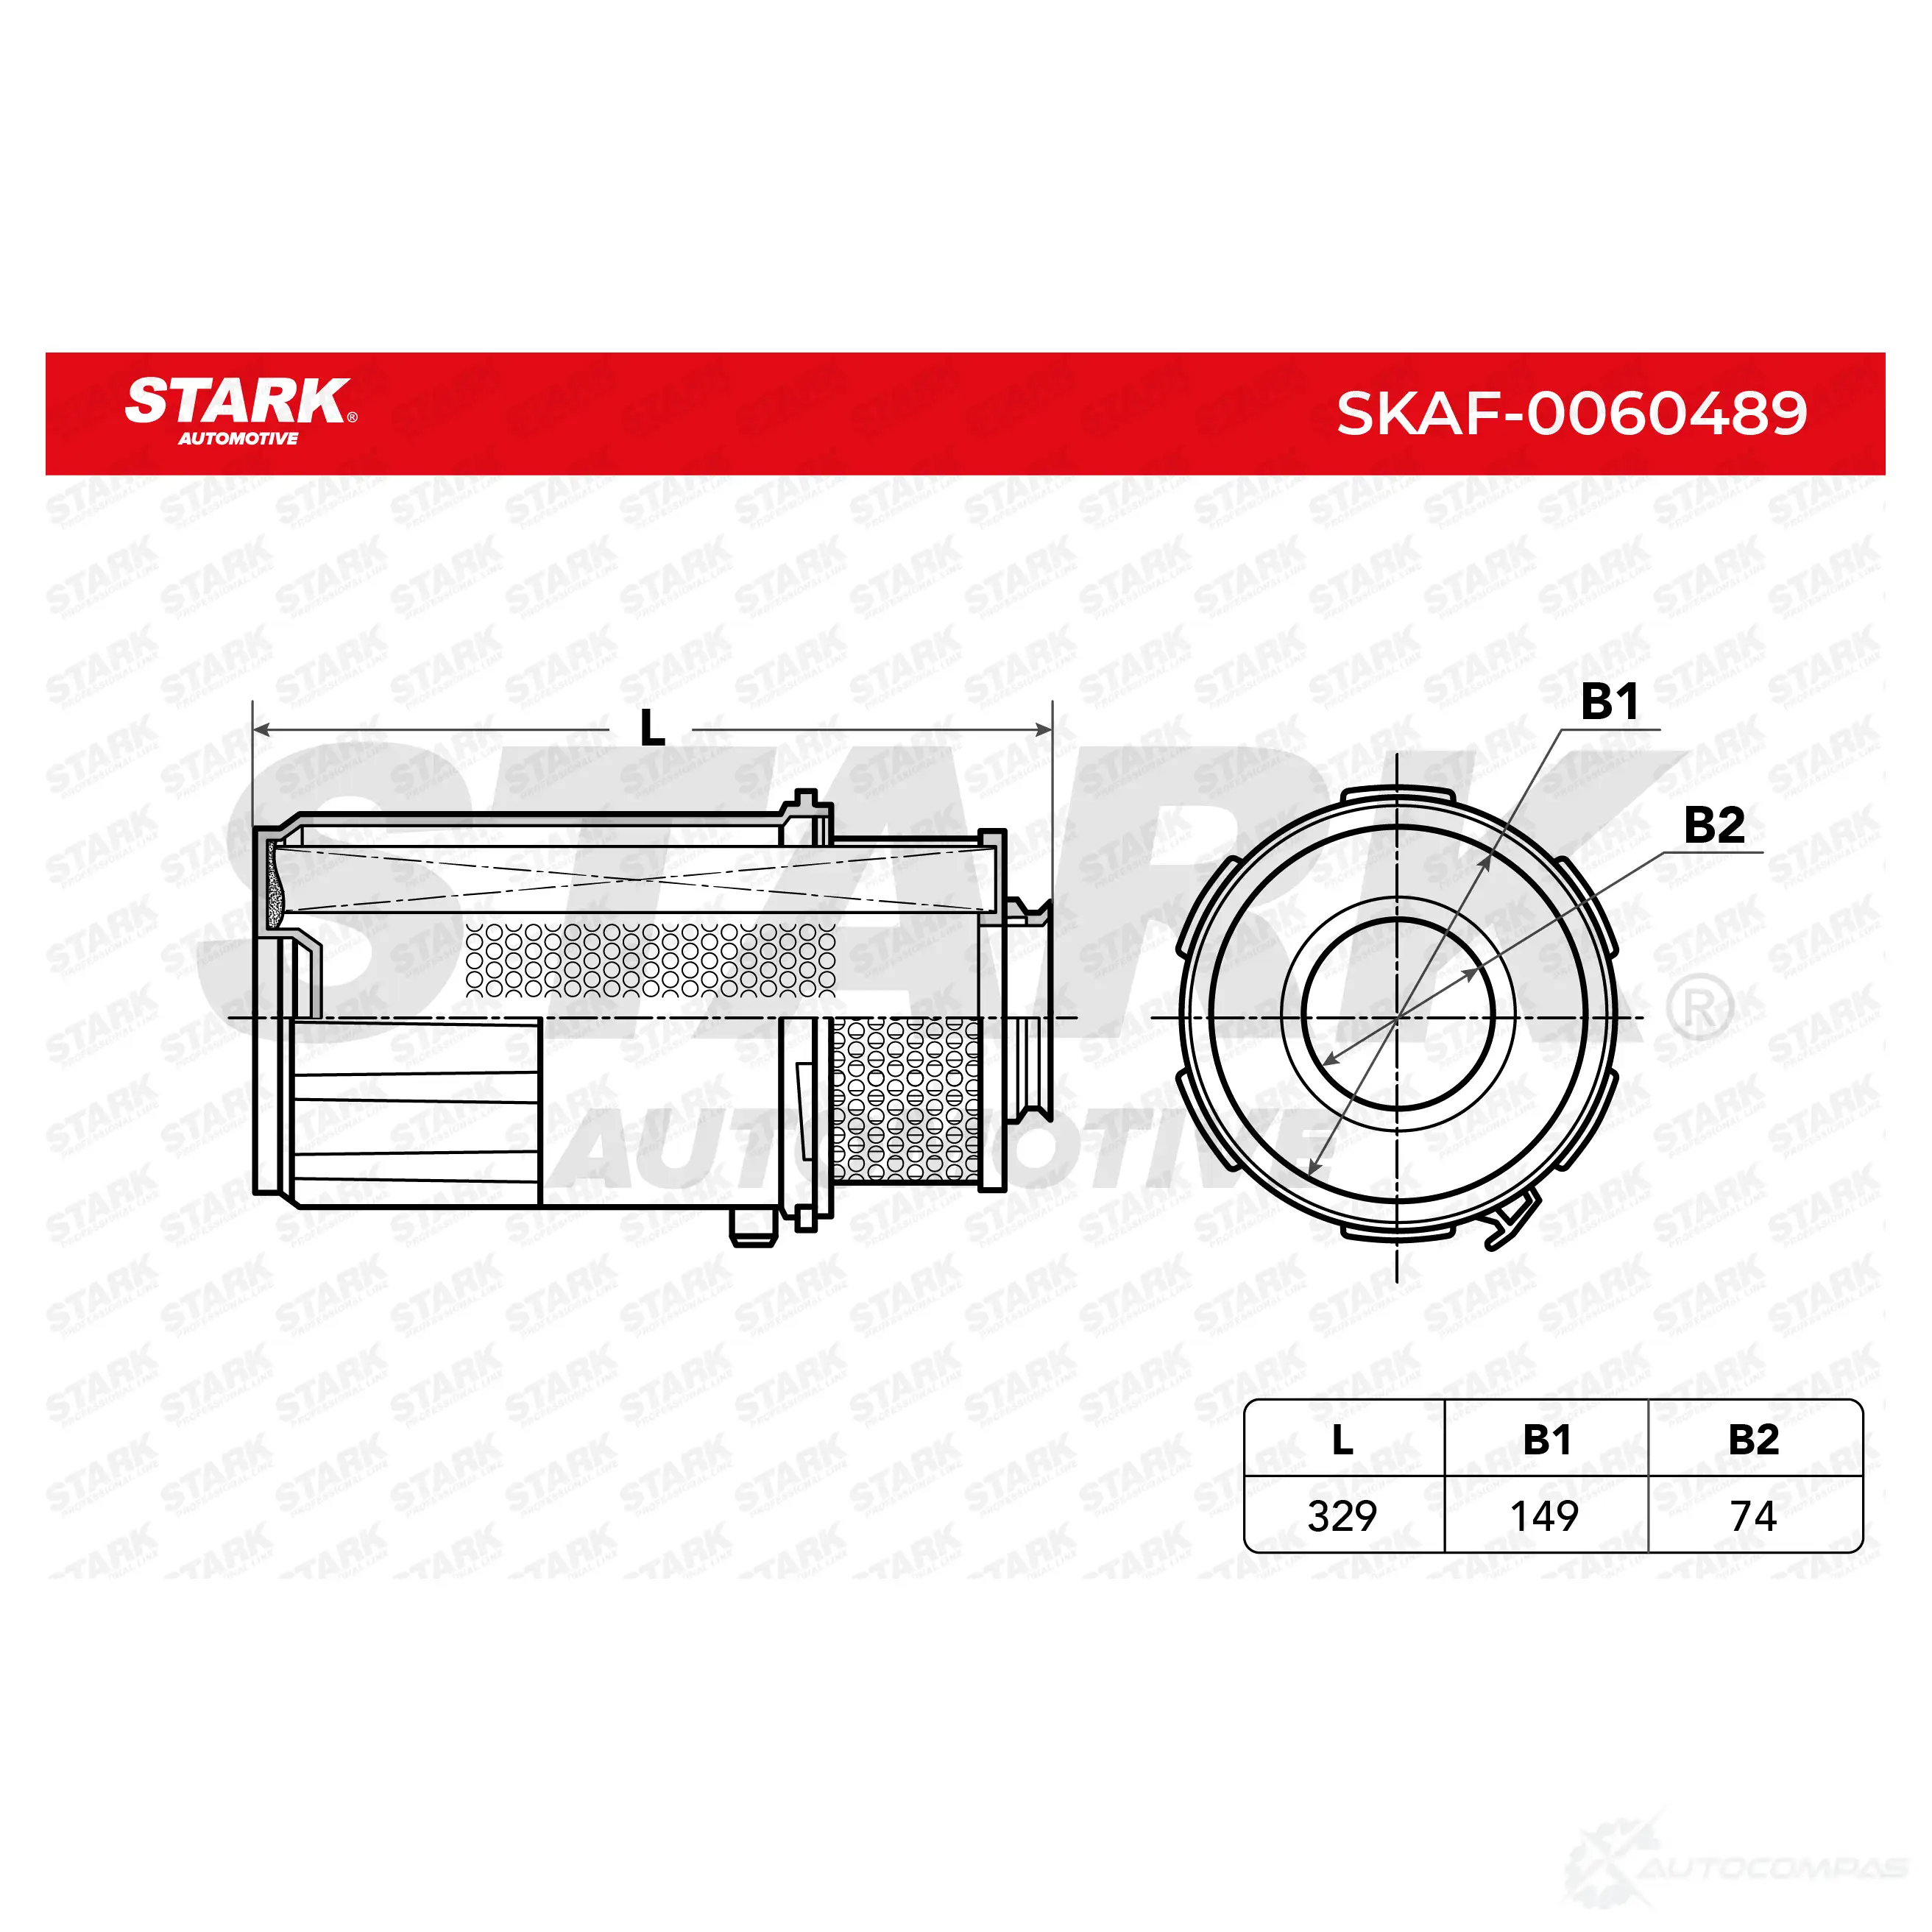 Воздушный фильтр STARK 1437747600 EQP6 V64 skaf0060489 изображение 4